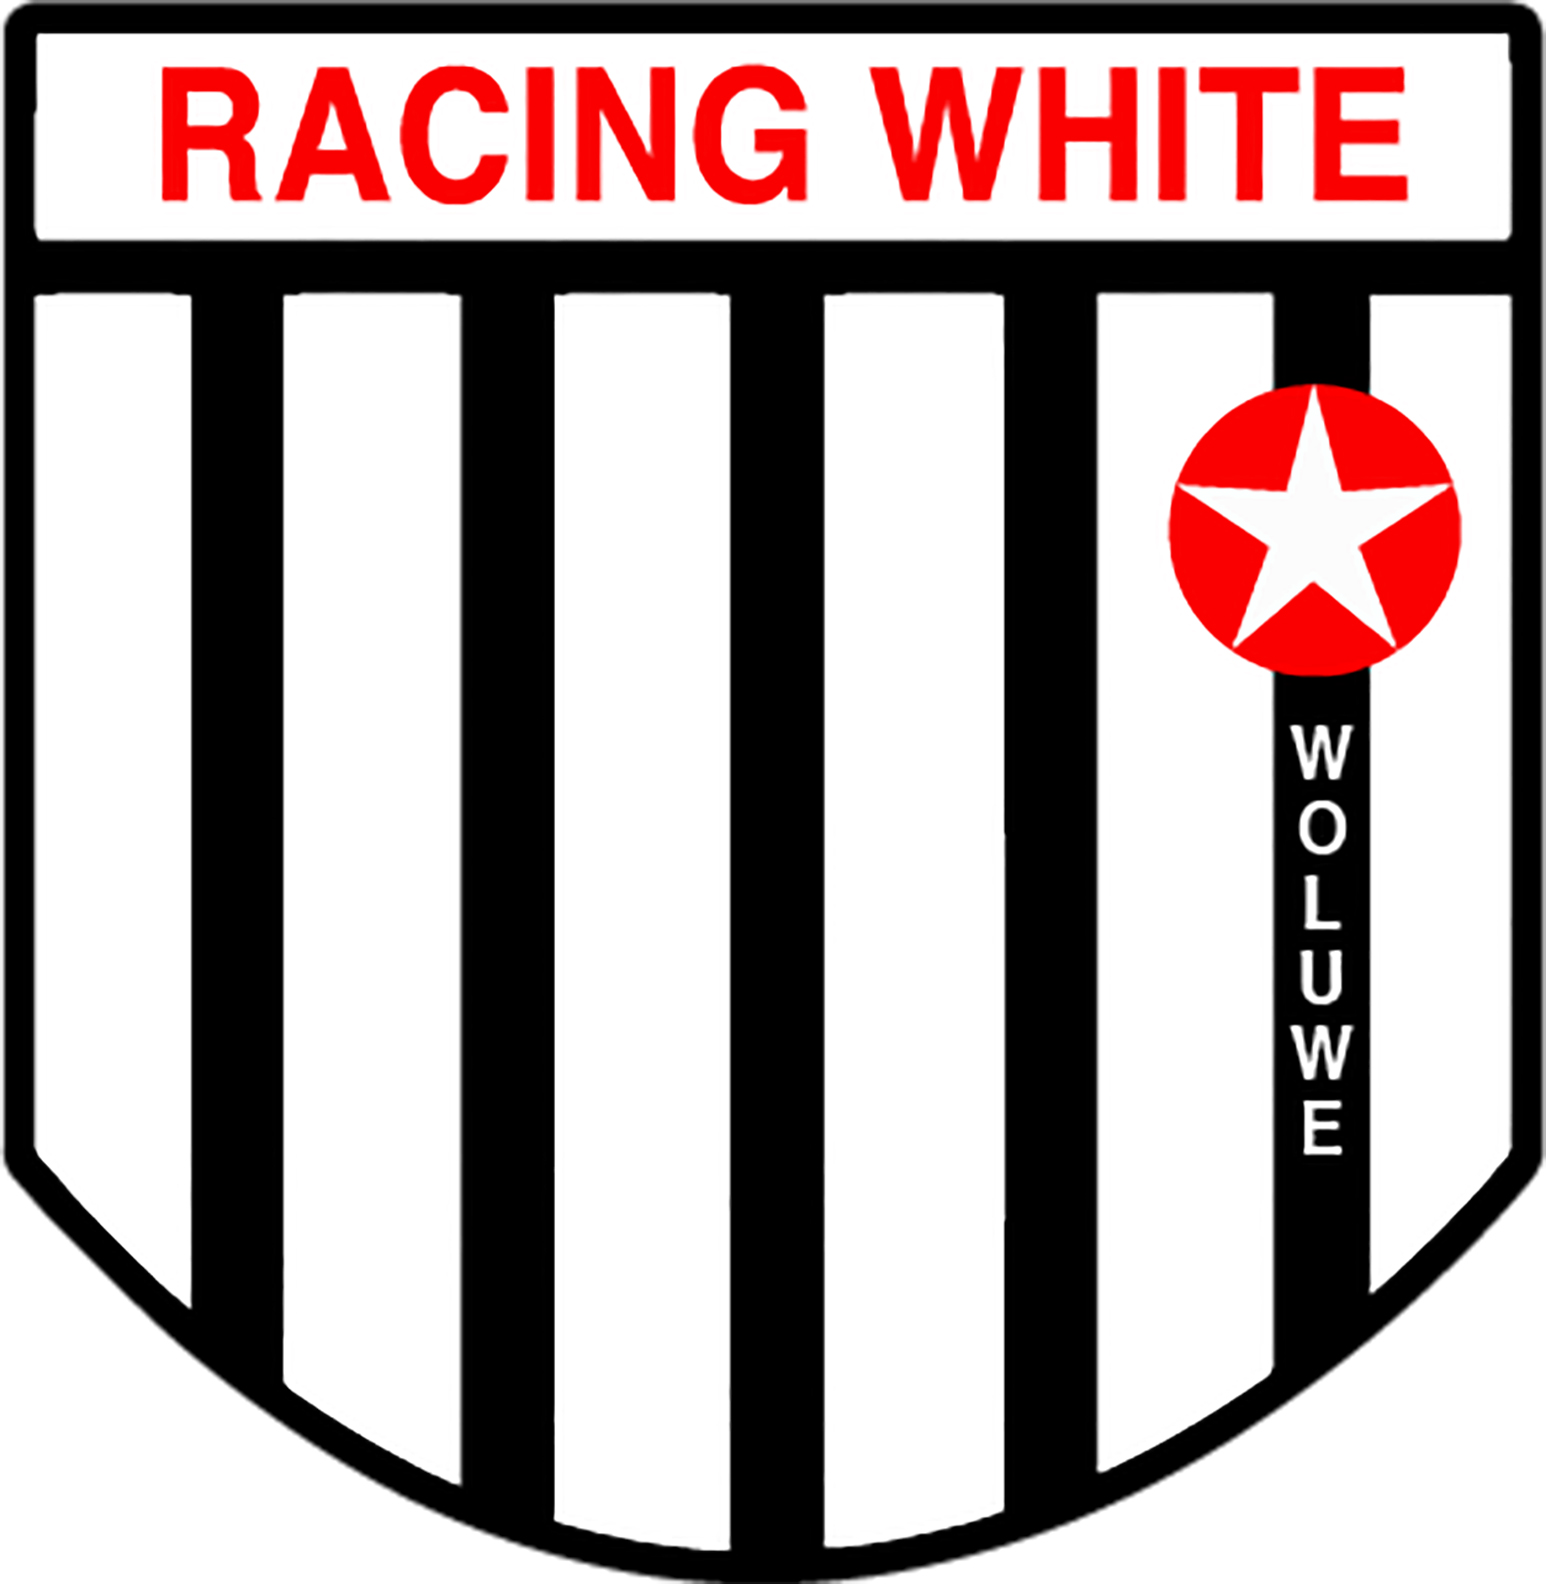 5 - Racing White Woluwe